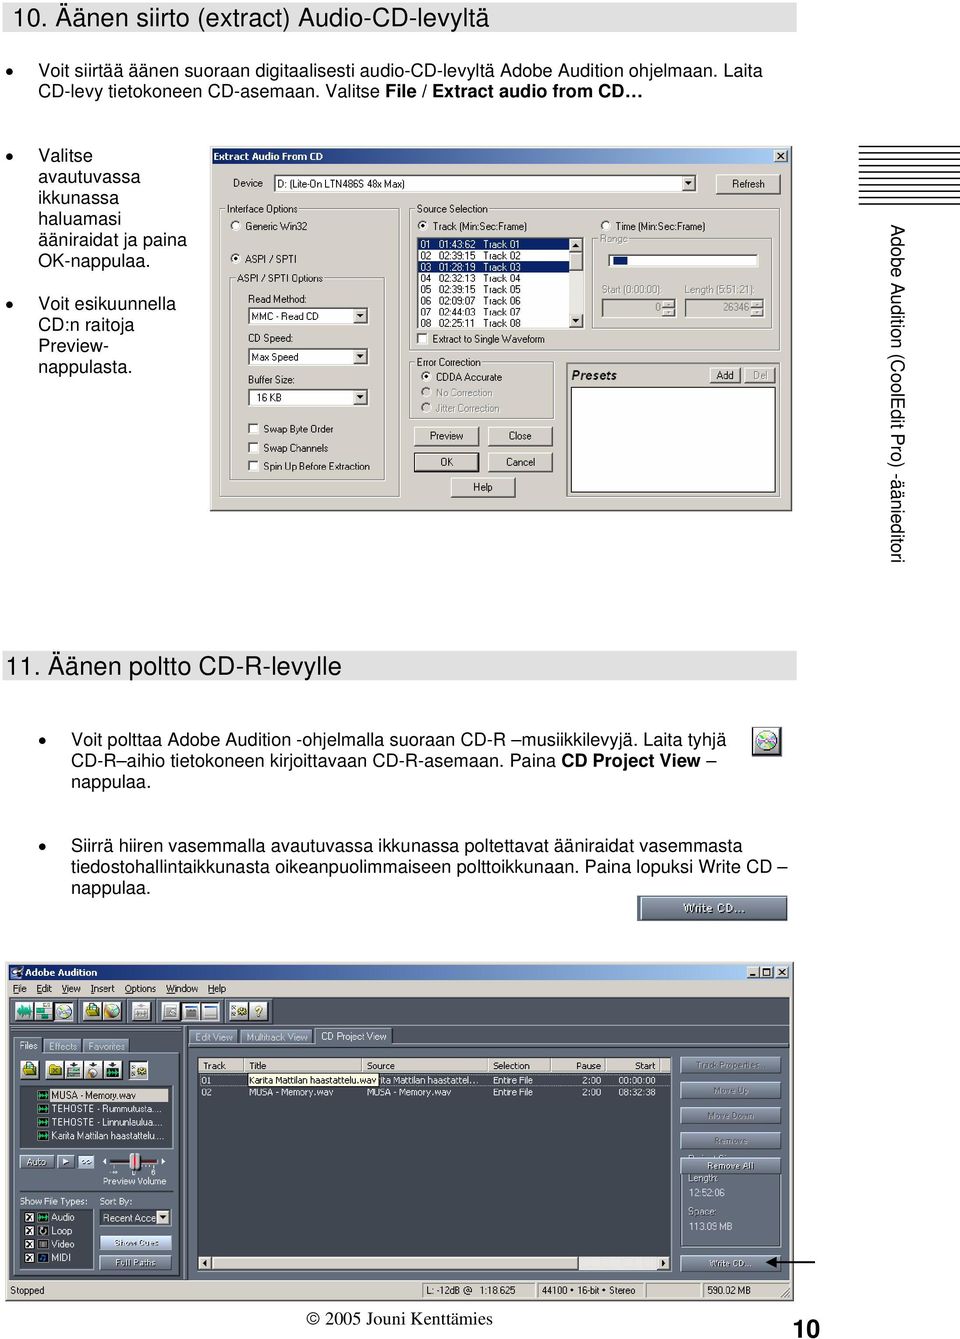 Äänen poltto CD-R-levylle Voit polttaa Adobe Audition -ohjelmalla suoraan CD-R musiikkilevyjä. Laita tyhjä CD-R aihio tietokoneen kirjoittavaan CD-R-asemaan.